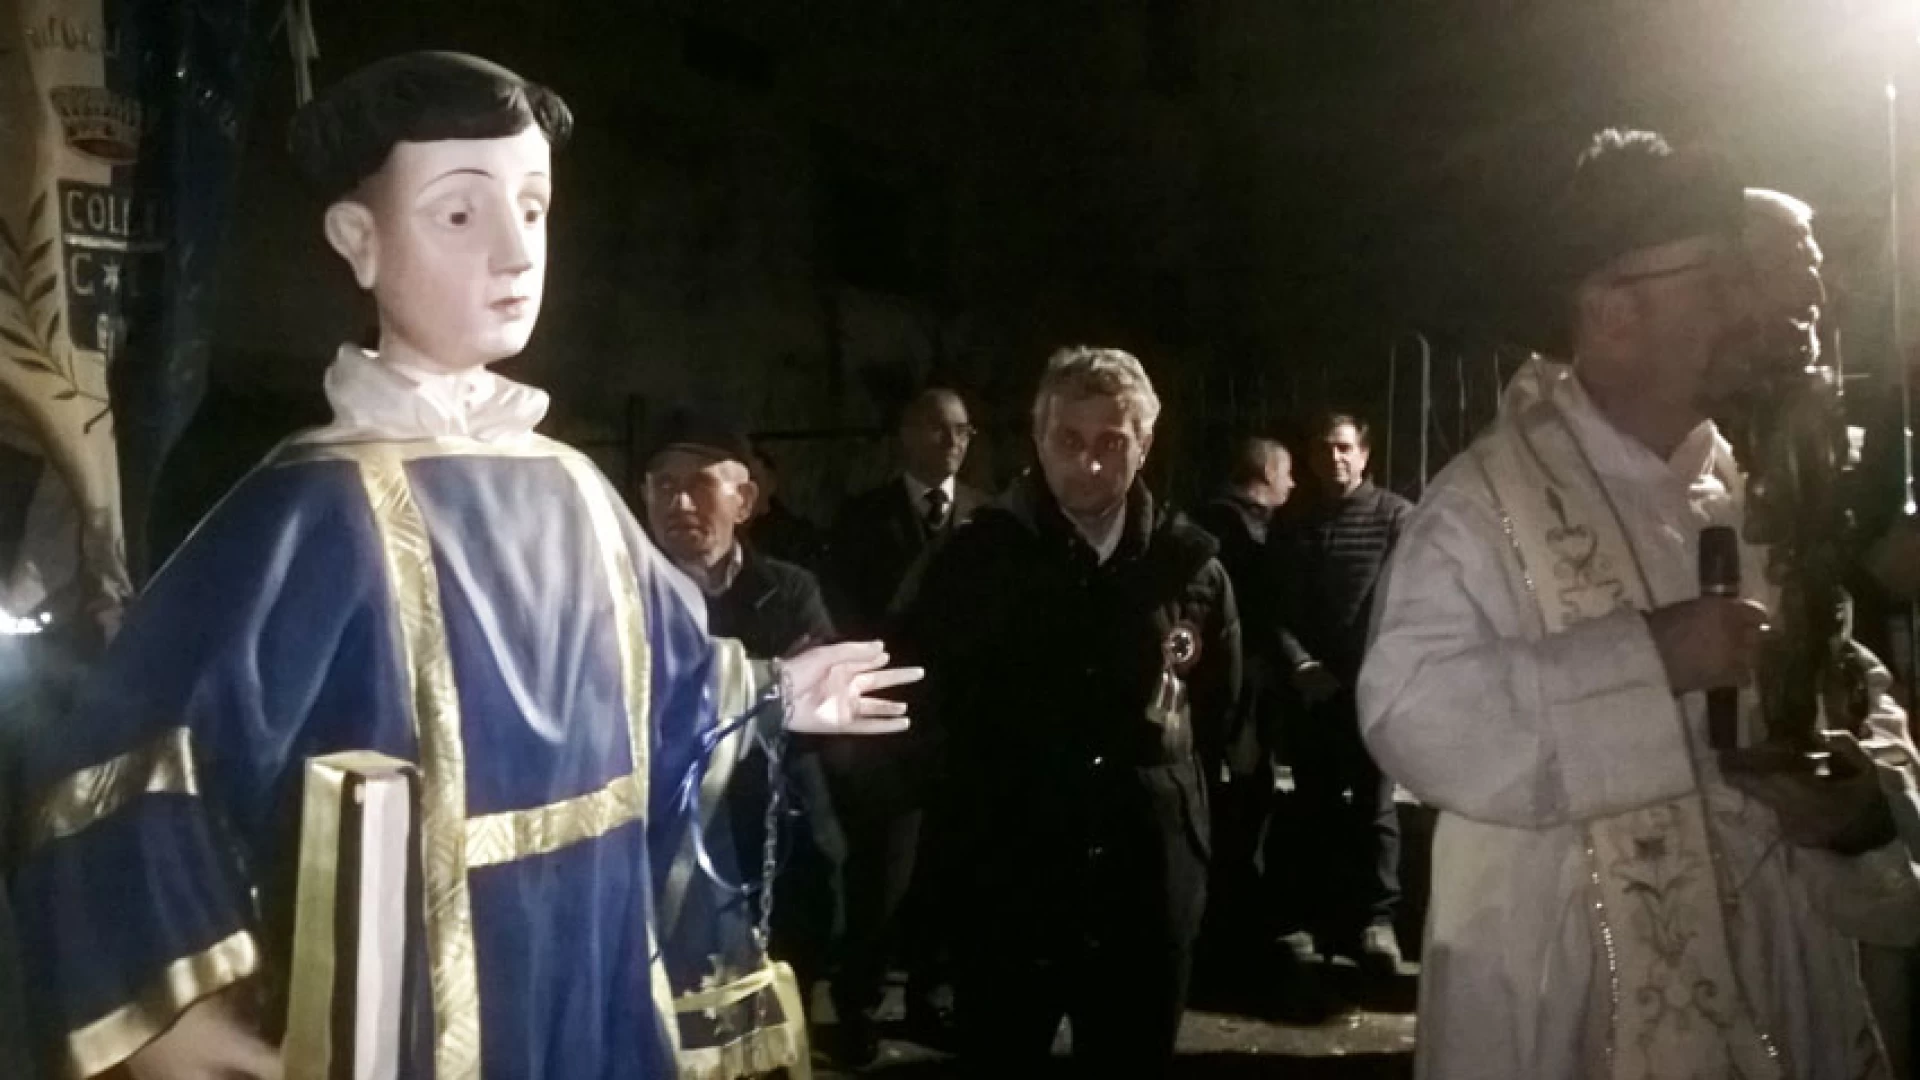 Colli a Volturno: rinnovata la tradizione di San Leonardo. Il paese ha omaggiato il santo patrono con la processione per le vie del paese.